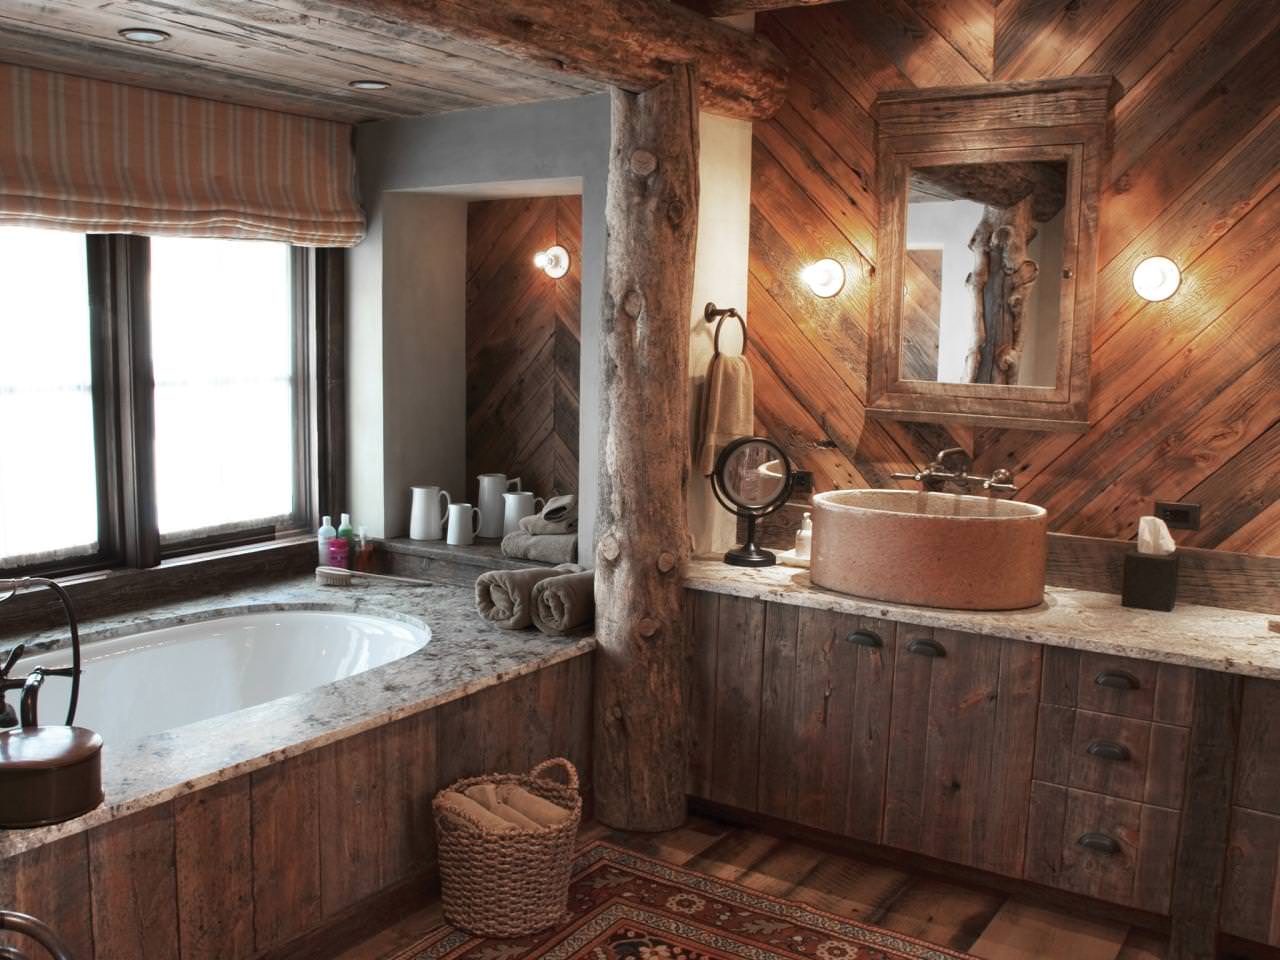 Badkamer in een houten huis: foto van het interieur van een mooie afwerking in een huis uit een bar